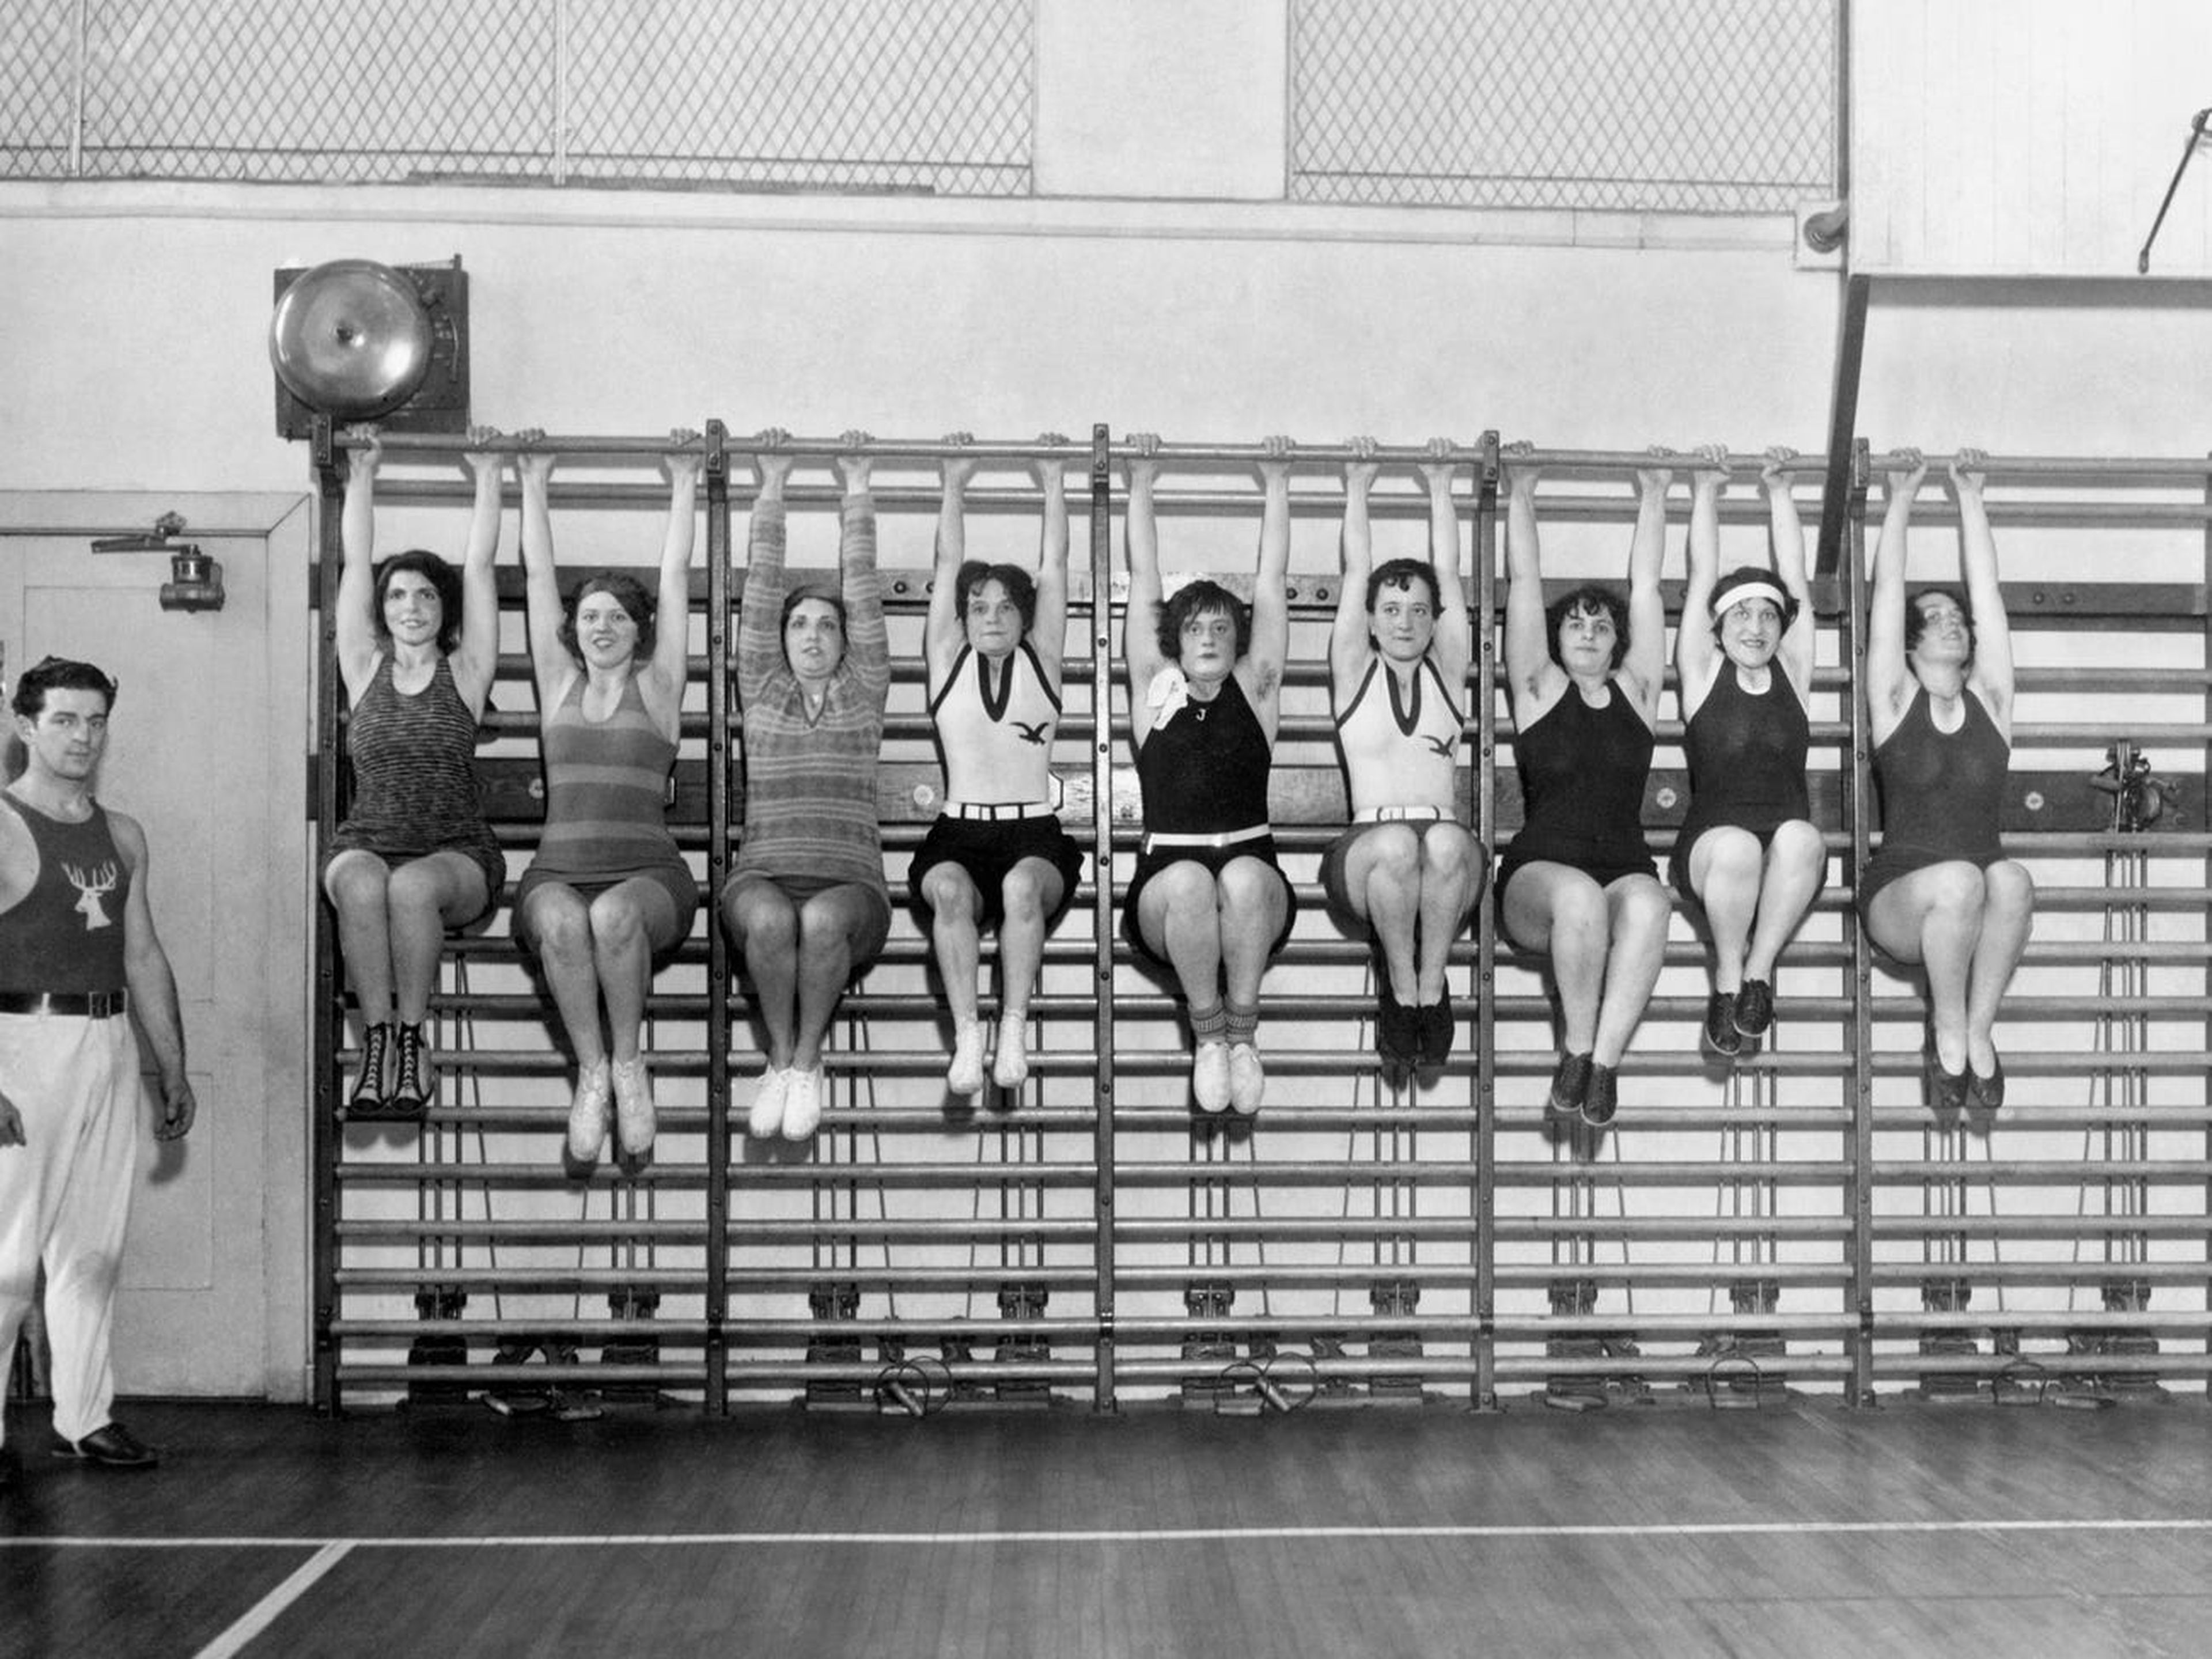 Las esposas de los miembros de la organización Philadelphia Elks en el gimnasio del club.